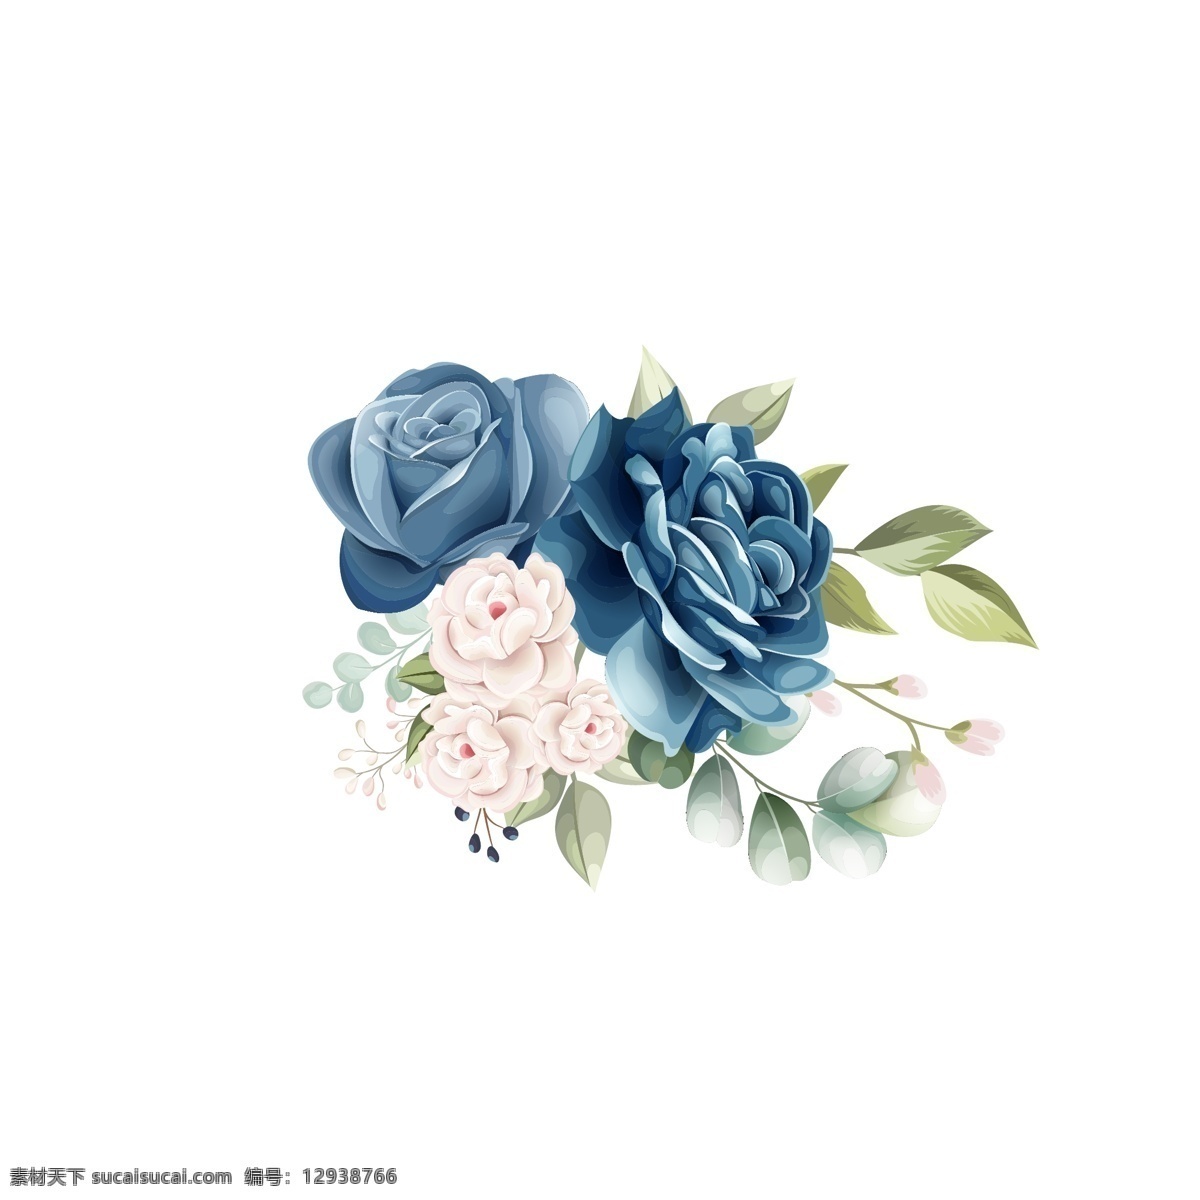 蓝色 玫瑰 花朵 装饰 元素 蓝色玫瑰花朵 花卉装饰元素 蓝色玫瑰 装饰元素 树枝装饰 精美 时尚背景 酷炫 潮流 背景图 底图 包装设计 设计元素 板报 海报 模板 办公 企划 花植物矢量 生物世界 花草